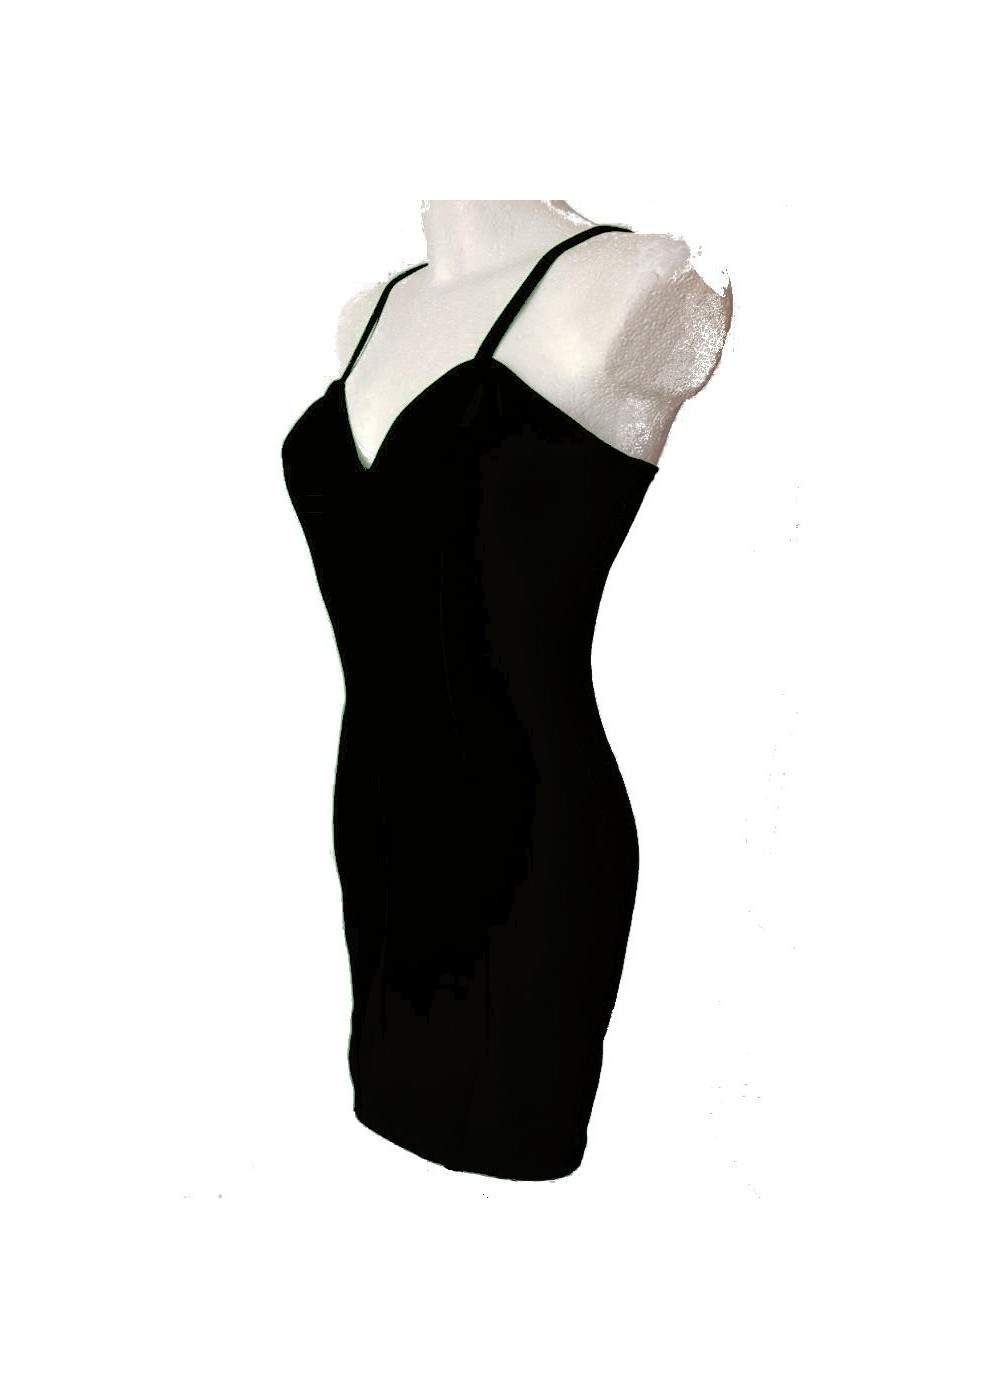 The Little Black Stretch Cotton Strap Dress CockTeildress Size 34 - 52 - Deutsche Produktion